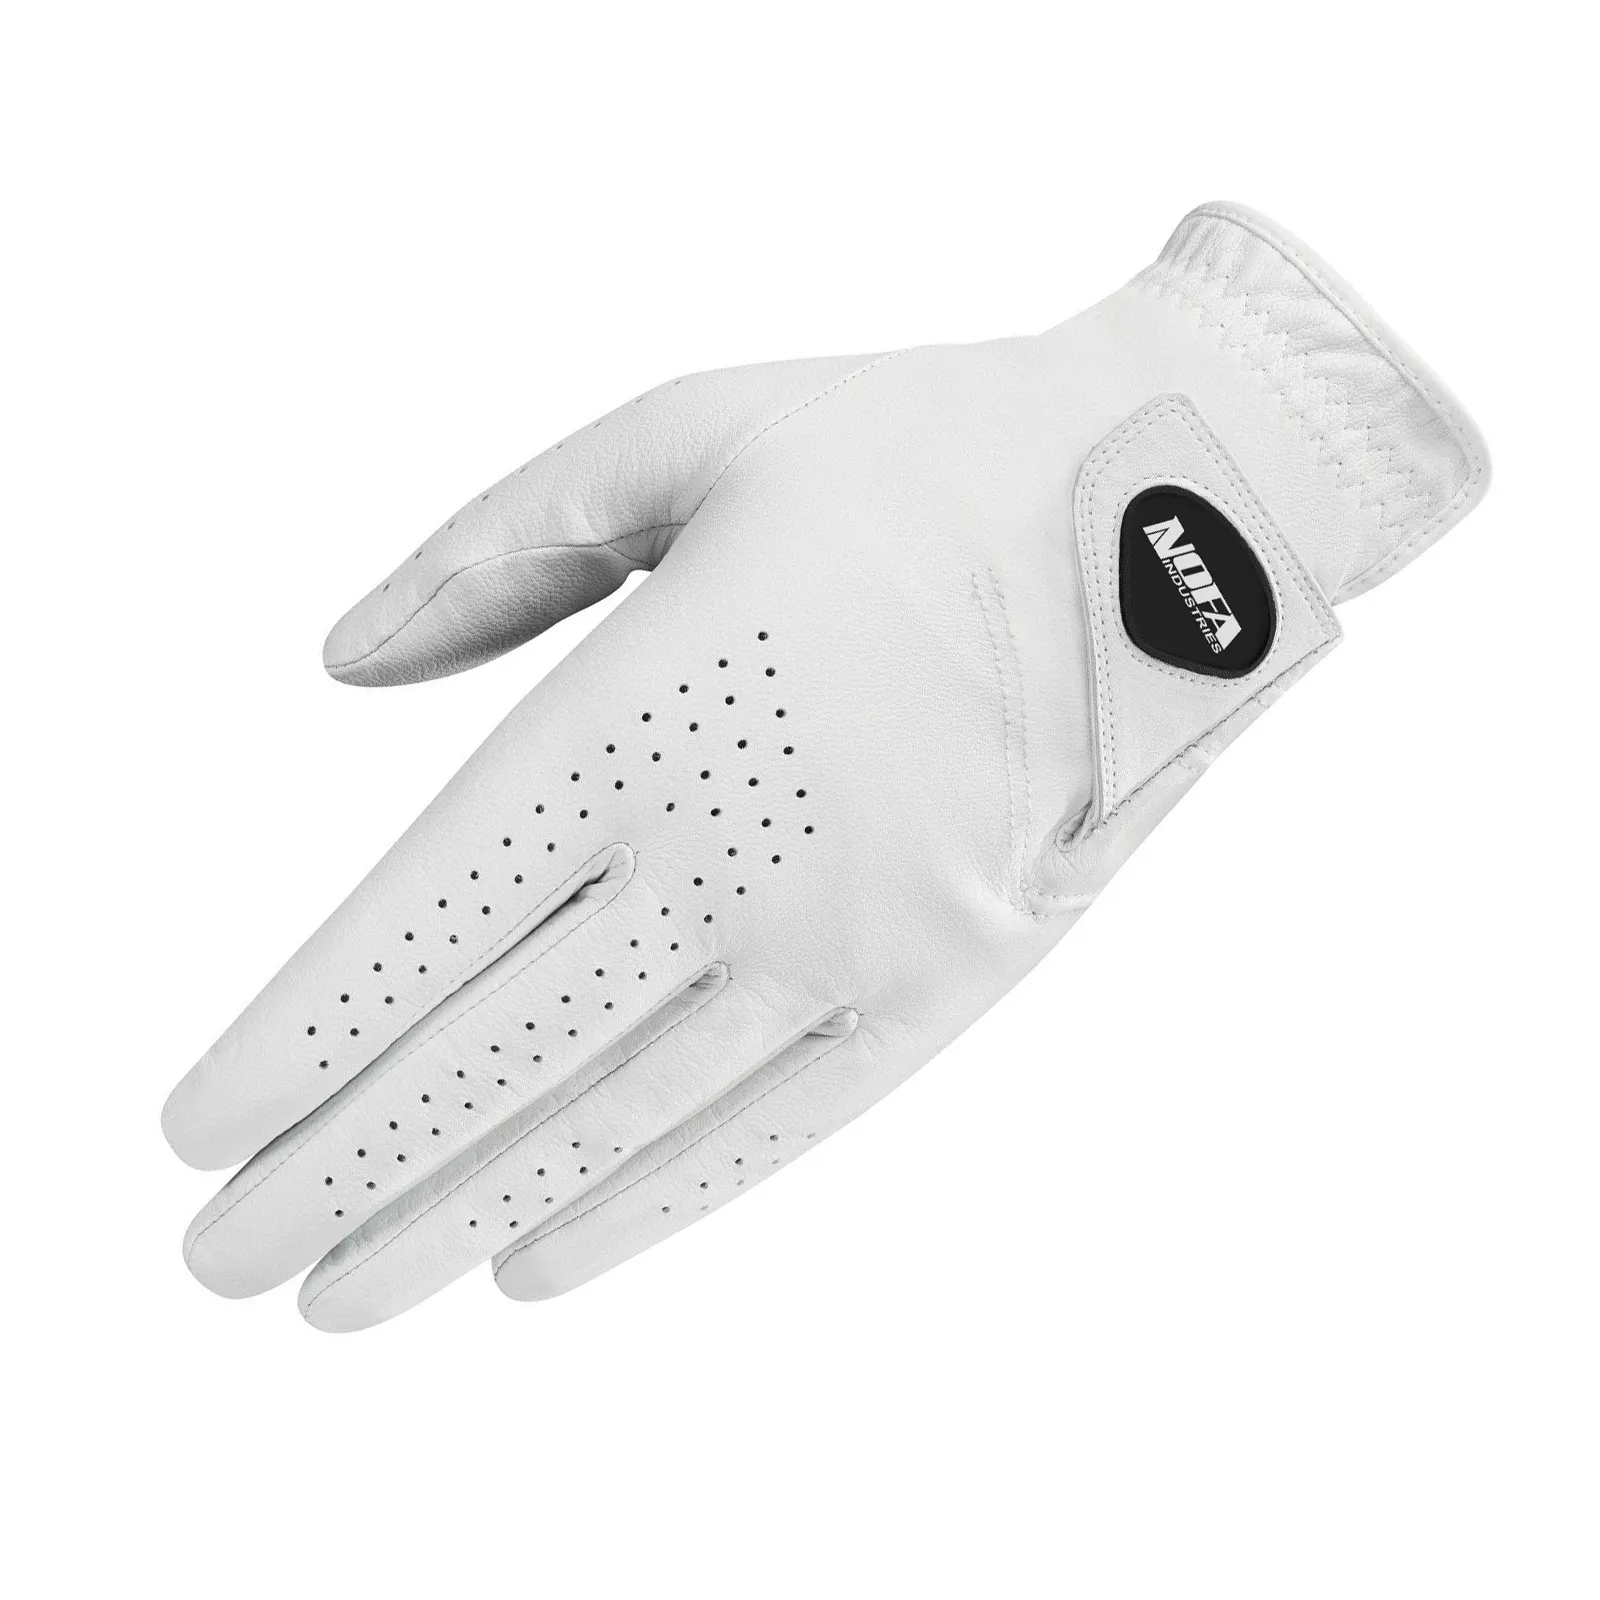 Benutzer definierte Farben Benutzer definiertes Logo & Label Golf handschuhe Hyper touch Pro Golf handschuh Herren Rechtshänder Cabretta Leather Golfing